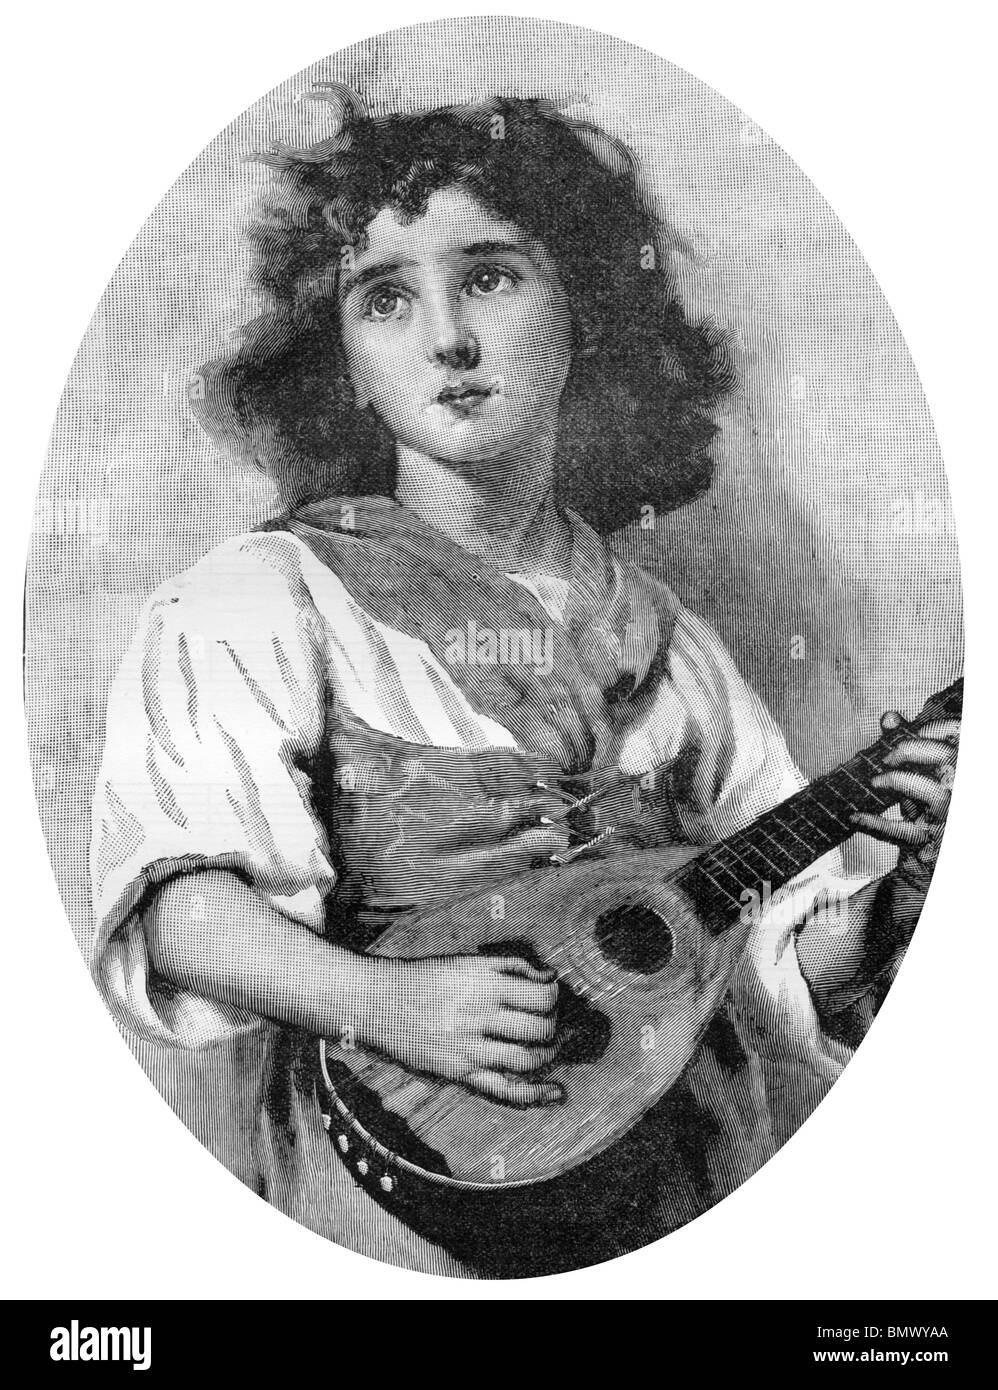 Femme Jouant De La Guitare Banque D Images Noir Et Blanc Alamy